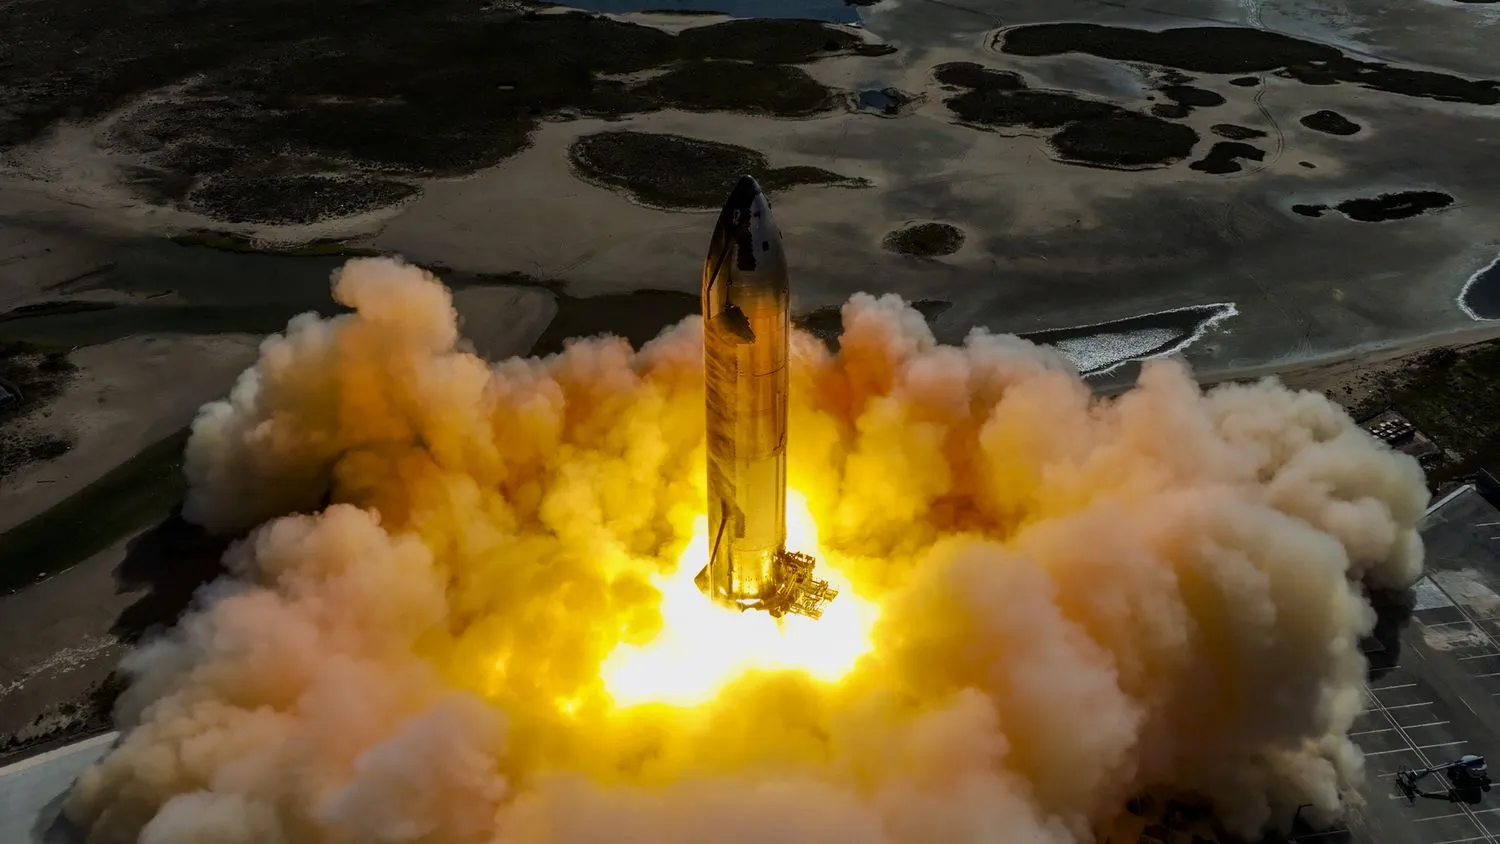 Mehr über den Artikel erfahren US-Militär sieht SpaceX Starship für „potenziell gefährliche Missionen“: Bericht